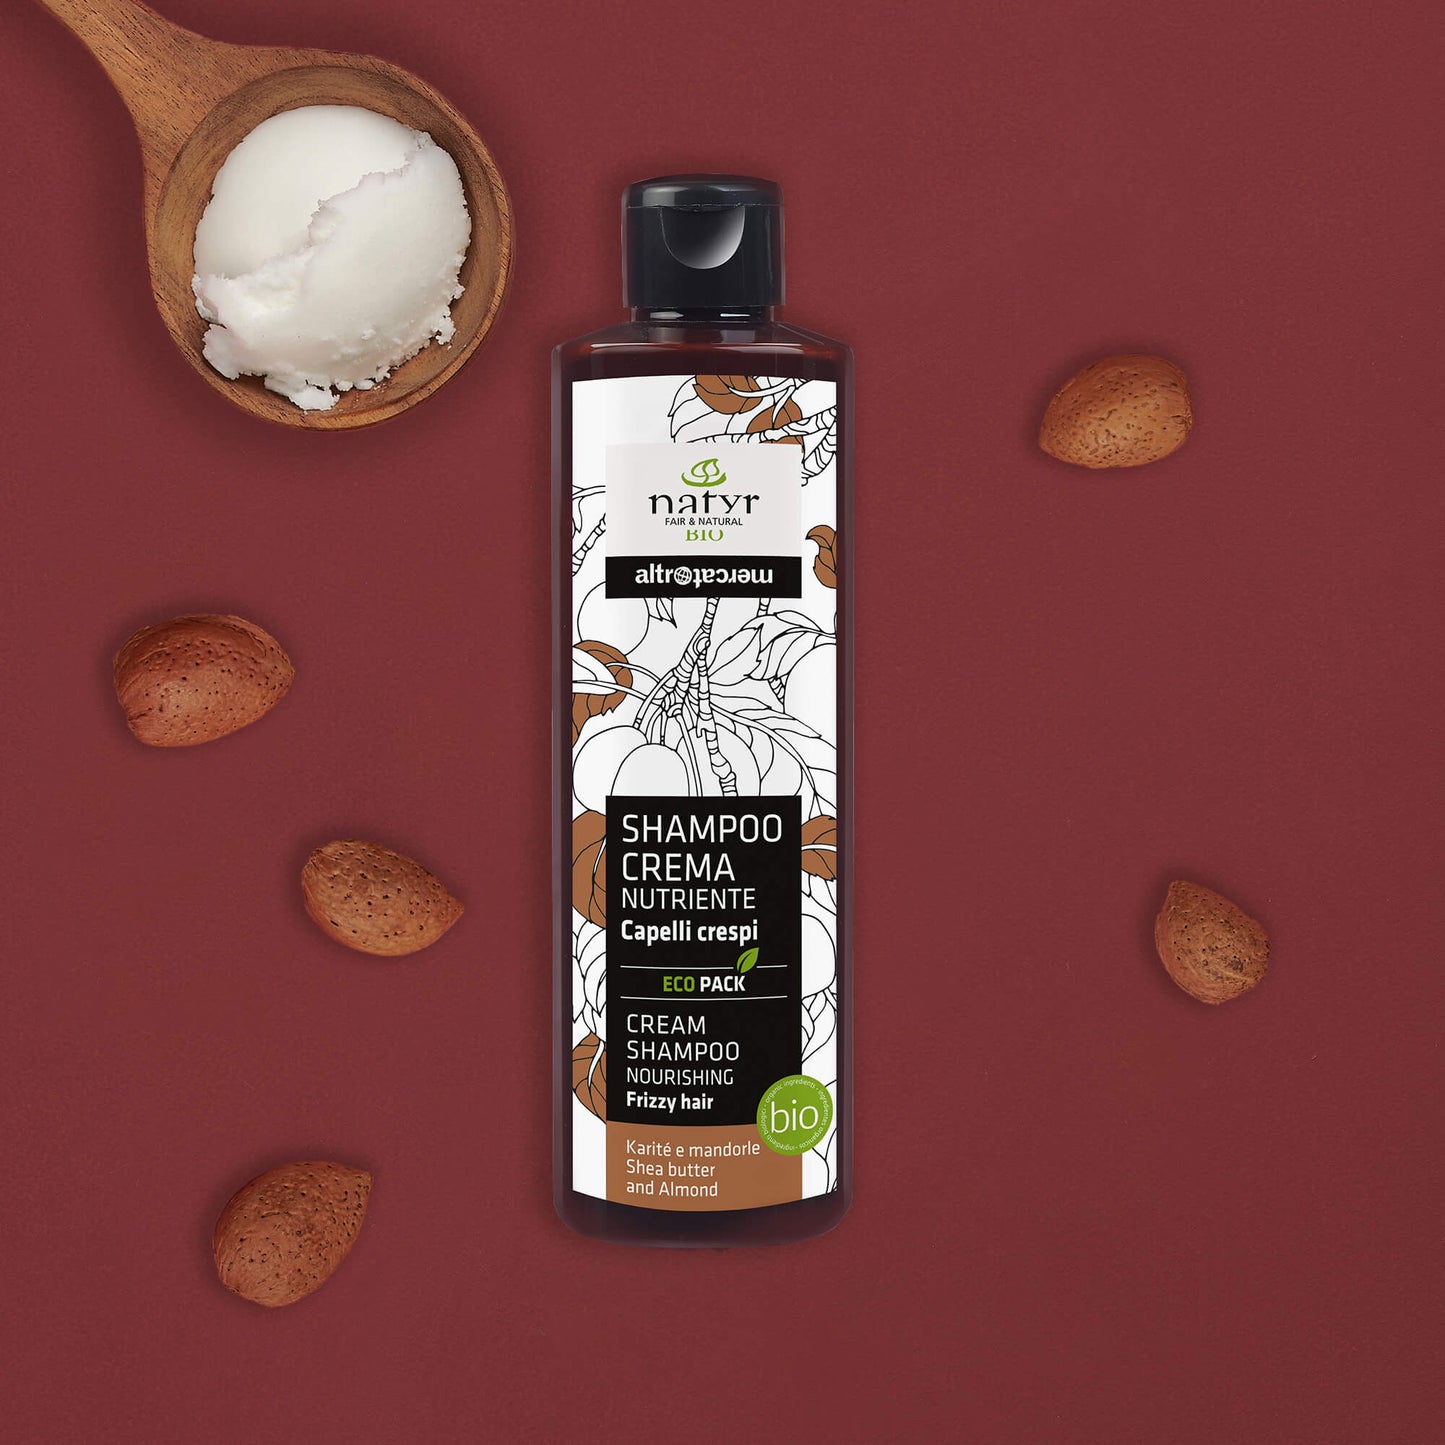 Shampoo crema nutriente karitè e mandorle - bio | 200 ml